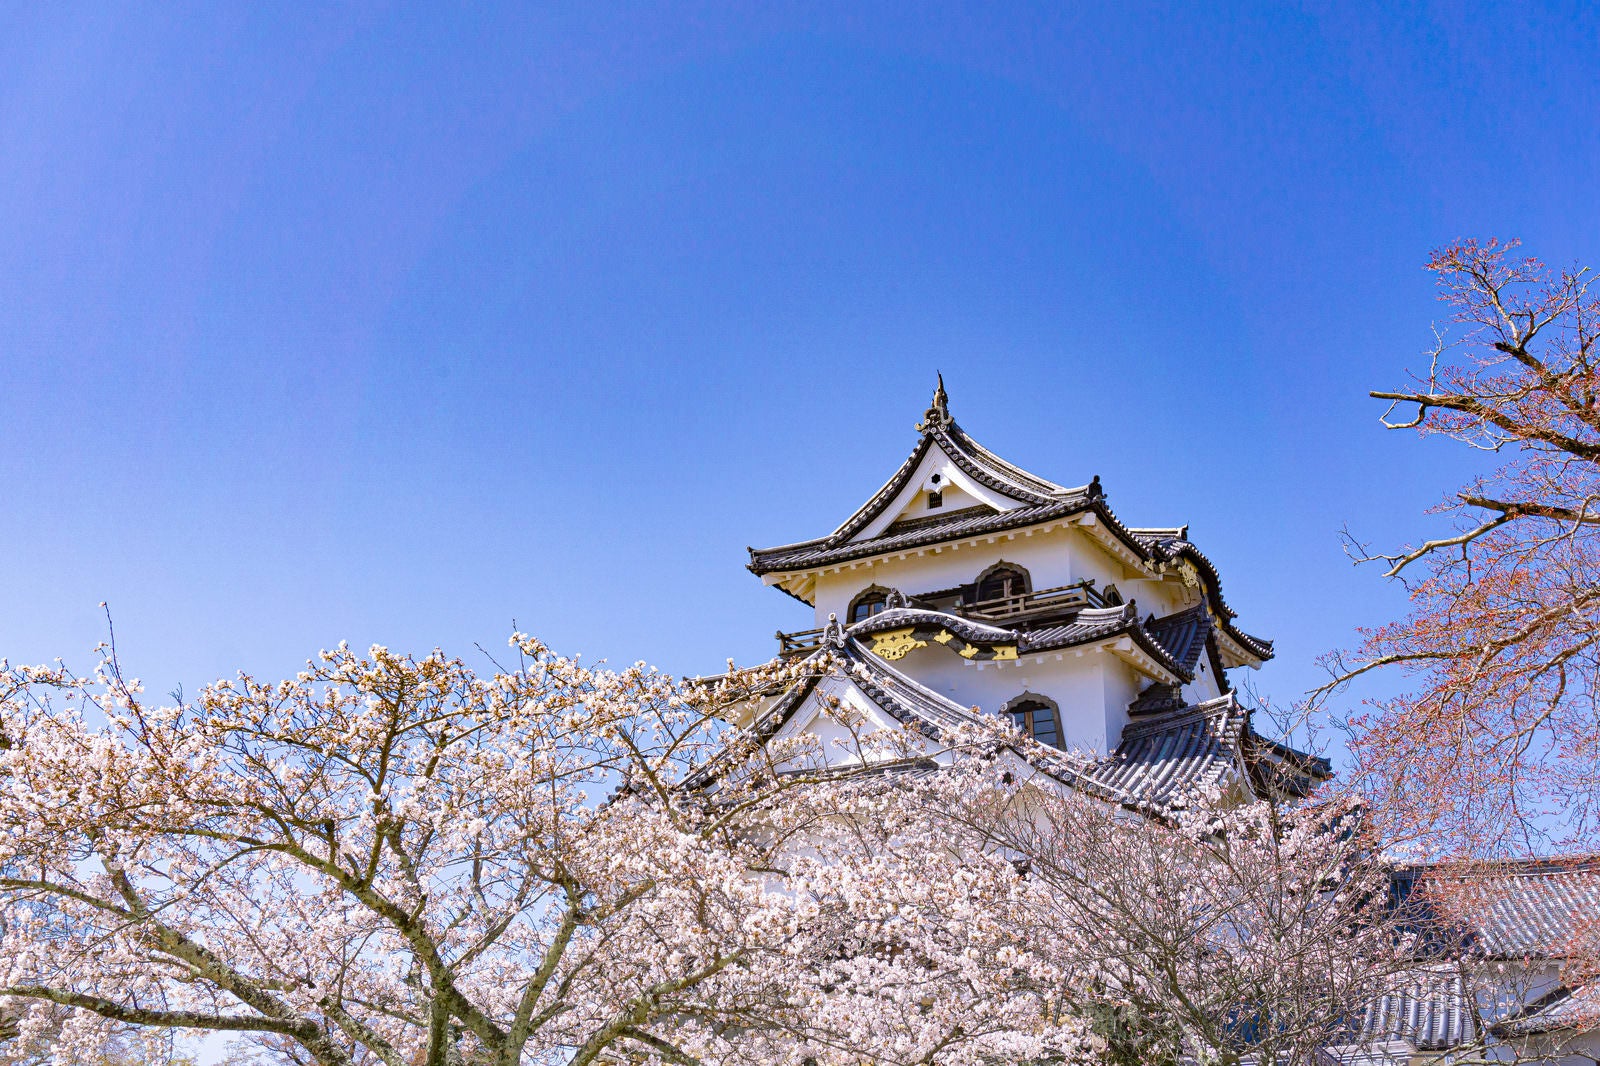 「本丸に咲く桜と彦根城天守」の写真